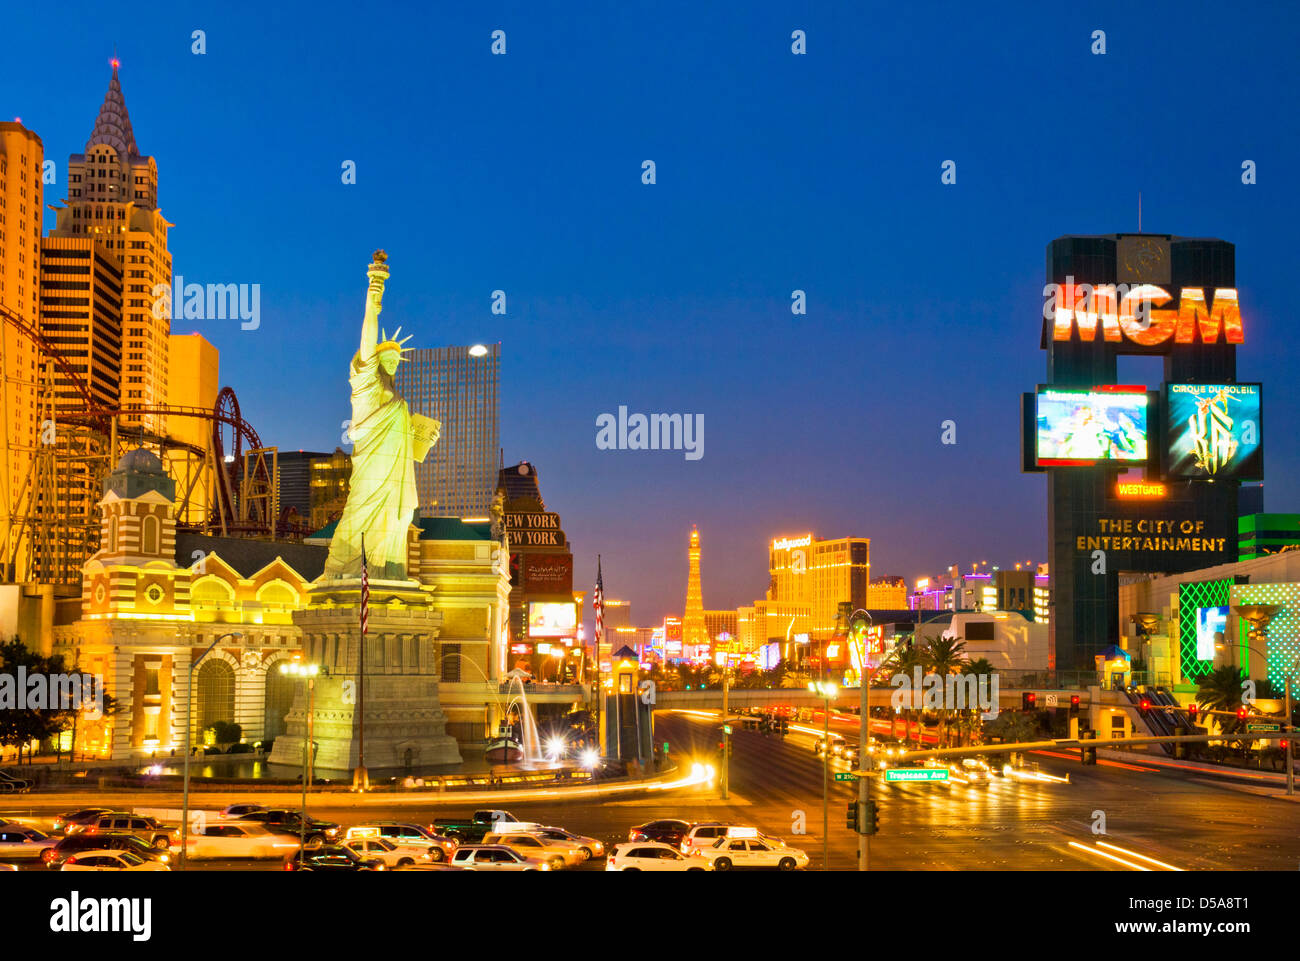 Las Vegas Strip beleuchtet in der Nacht von Leuchtreklamen, Las Vegas Boulevard South, Strip, Las Vegas, Nevada, USA Stockfoto